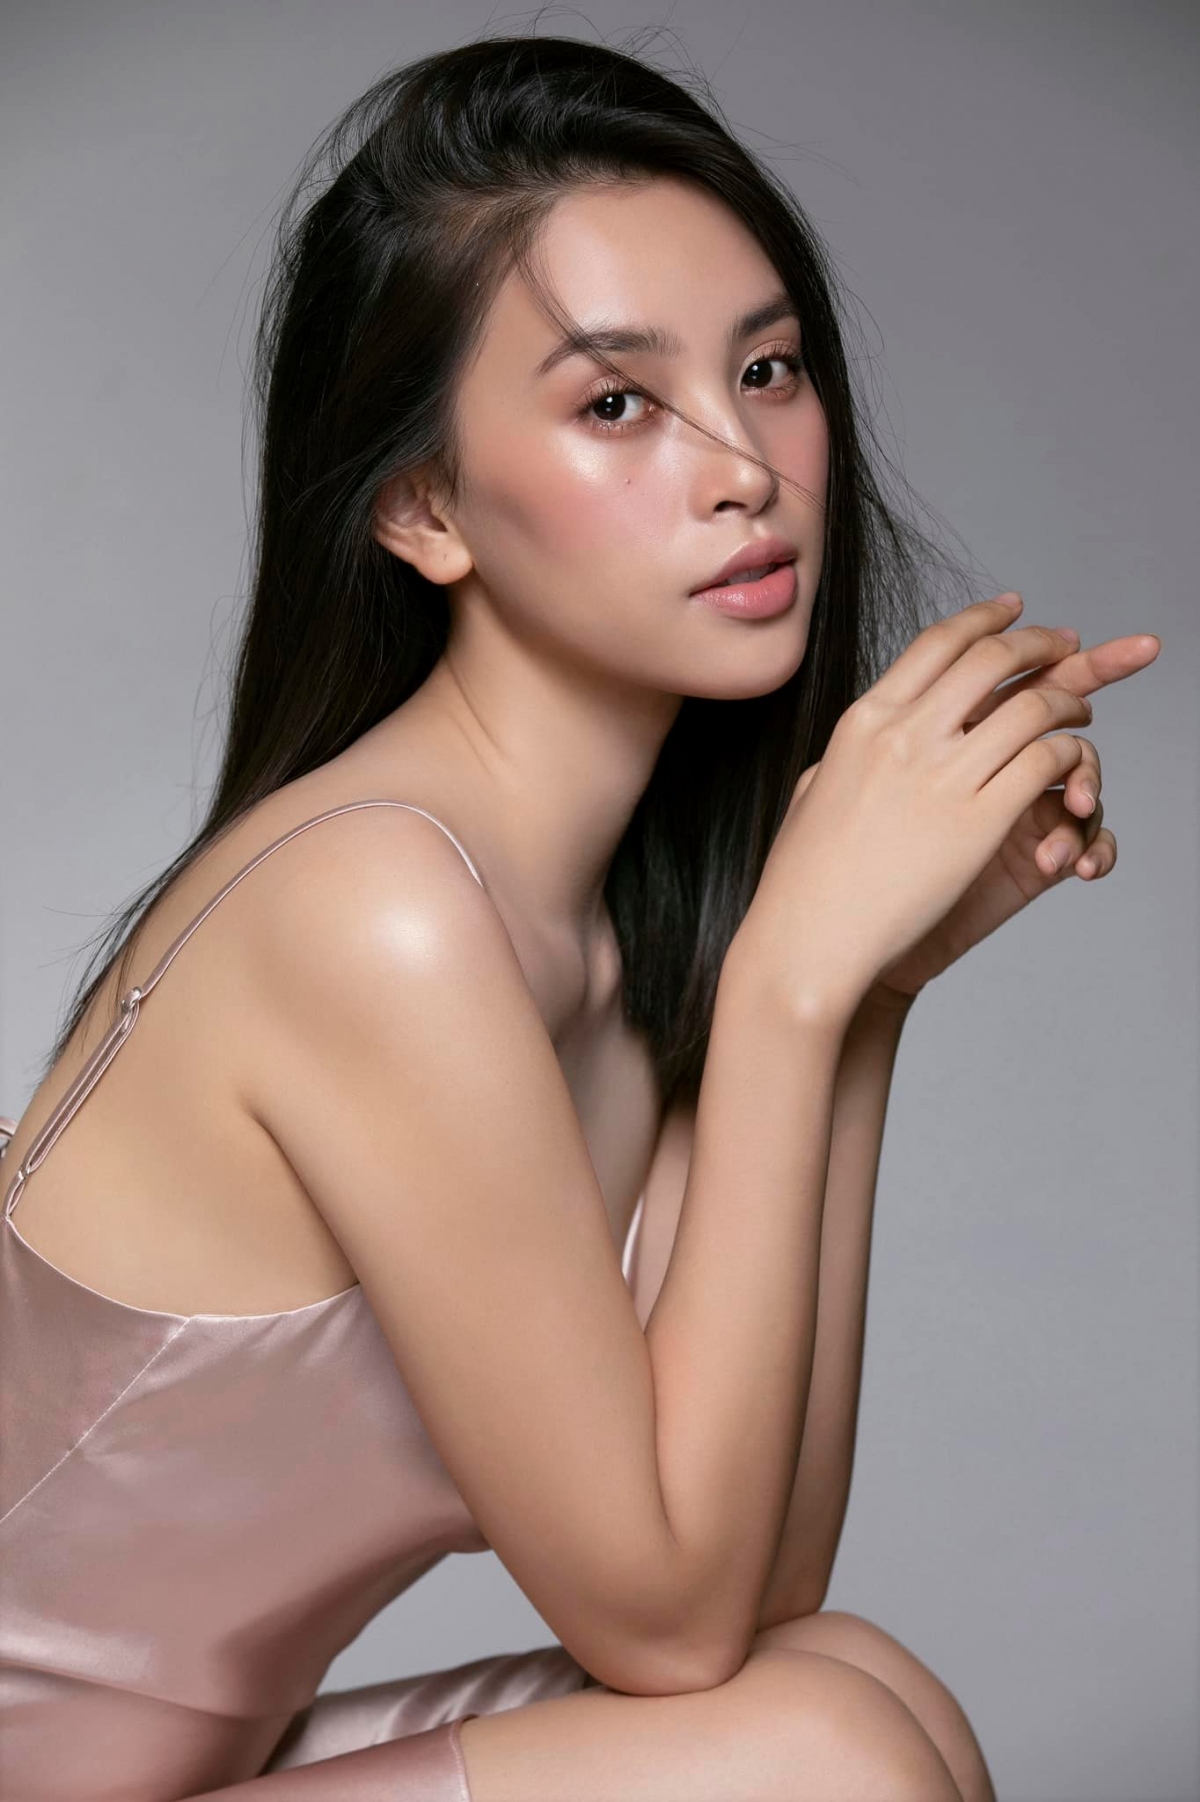 Hoa hậu Tiểu Vy đóng vai chính phim kinh dị cùng dàn sao "Mắt biếc"